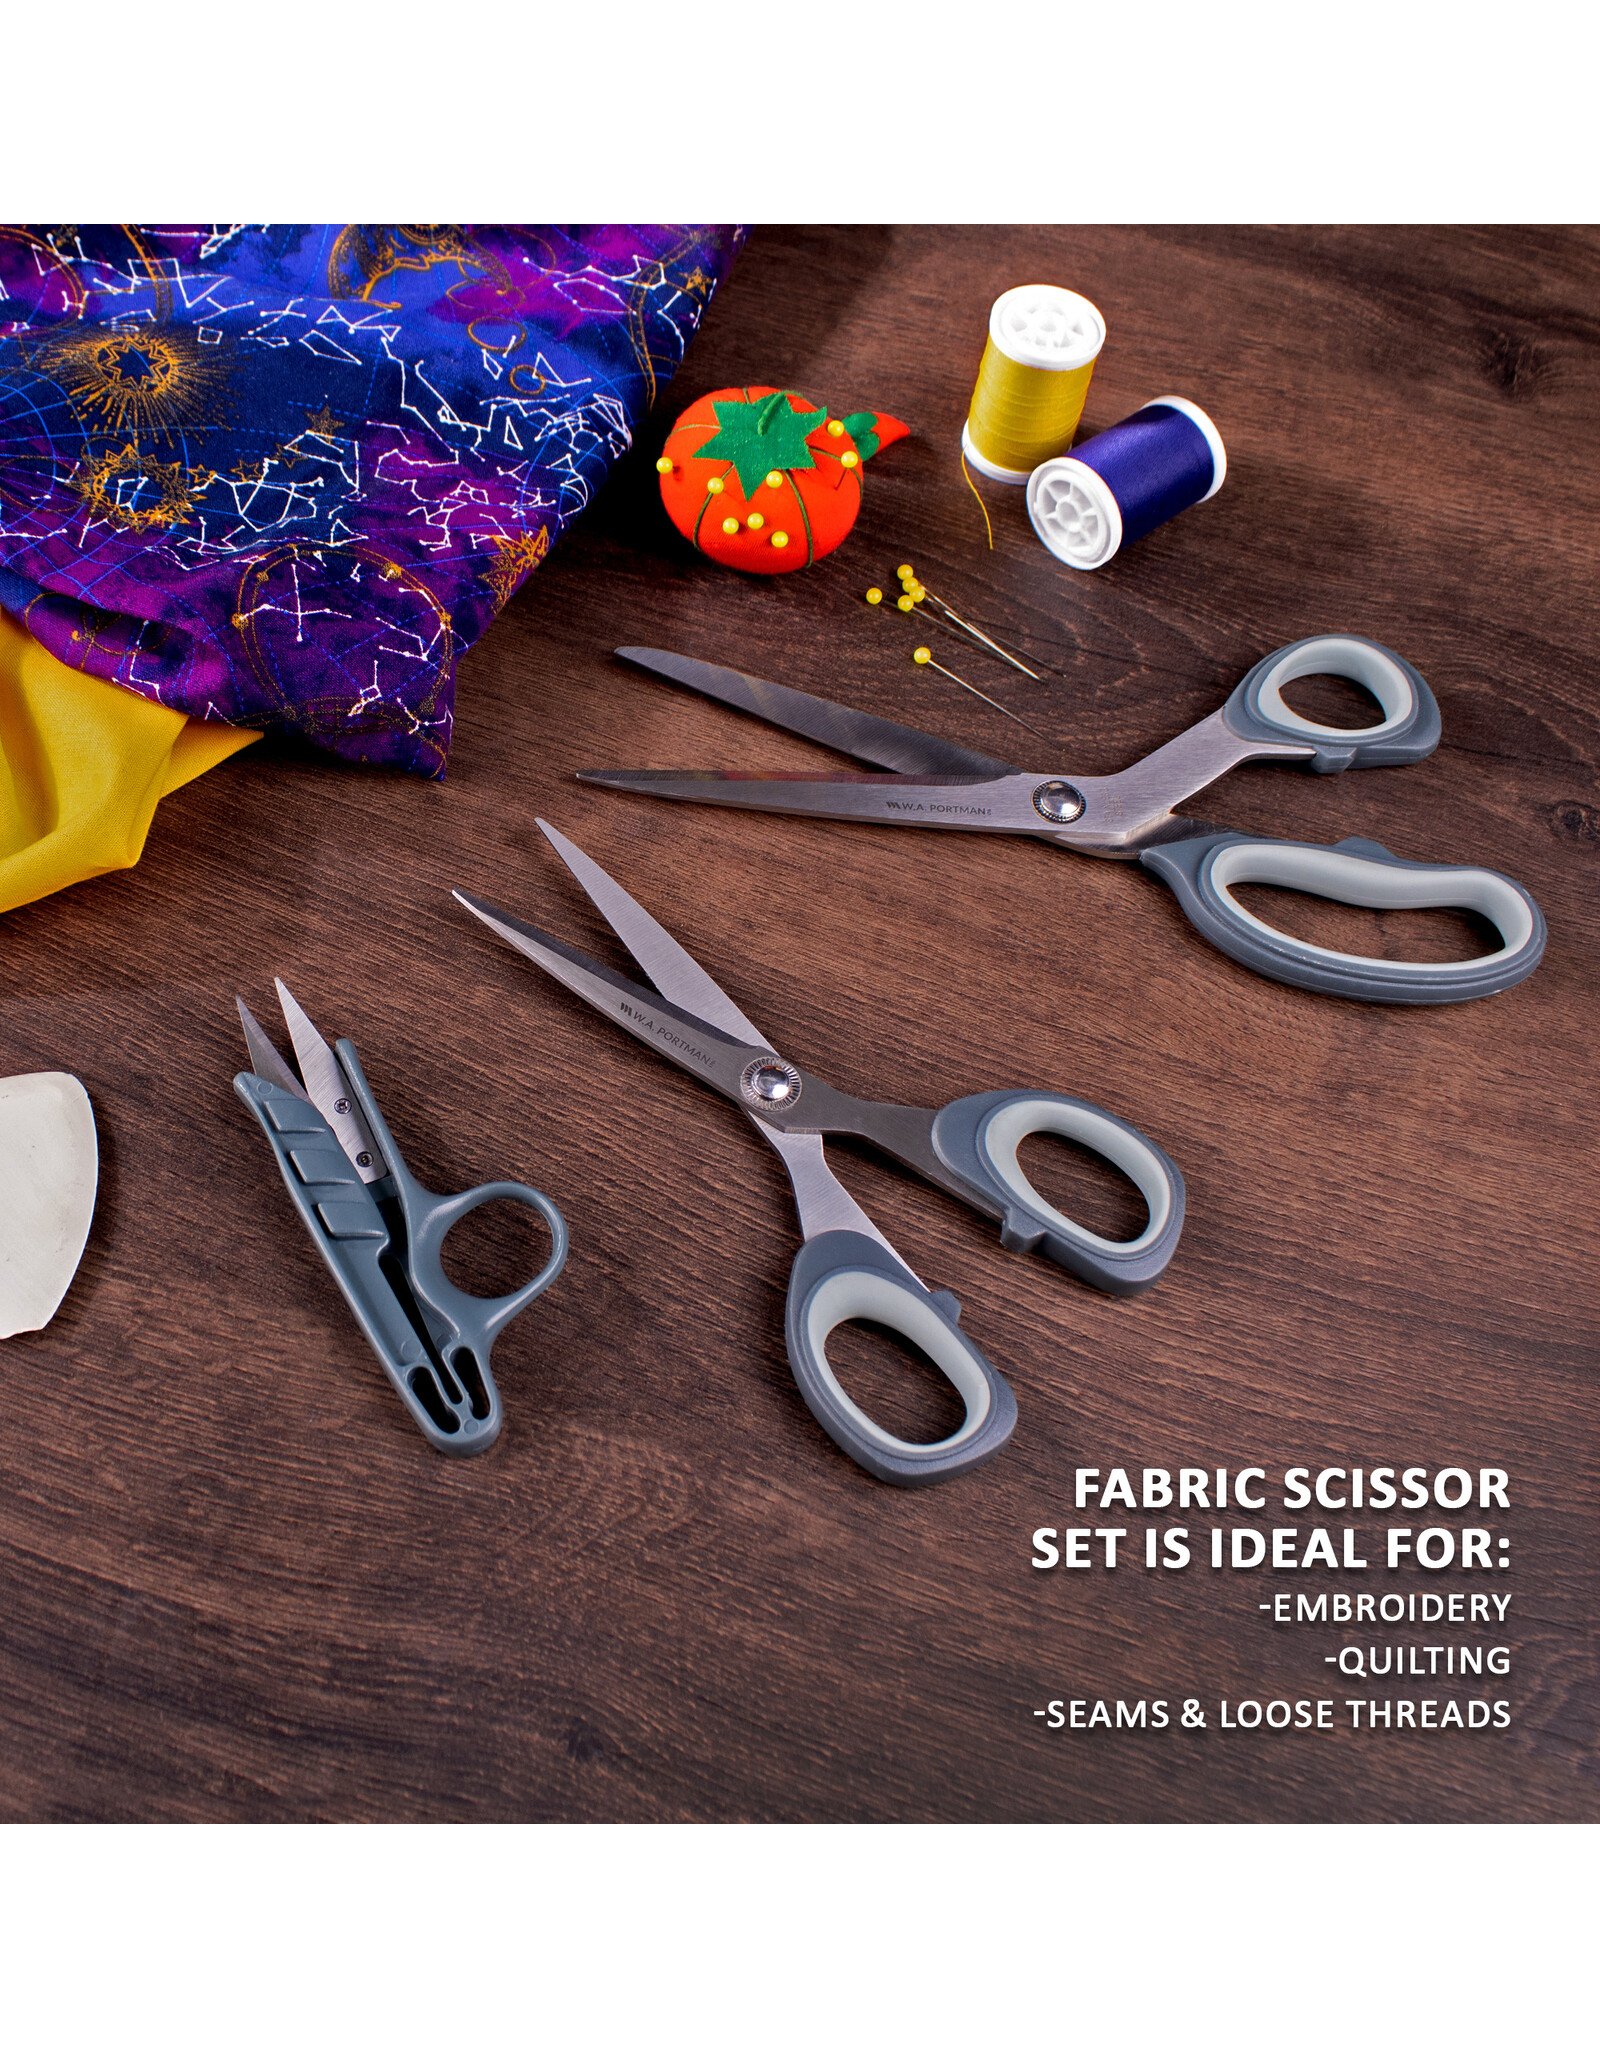 https://cdn.shoplightspeed.com/shops/636894/files/54981424/1600x2048x2/wa-portman-wa-portman-3pc-fabric-scissor-set.jpg